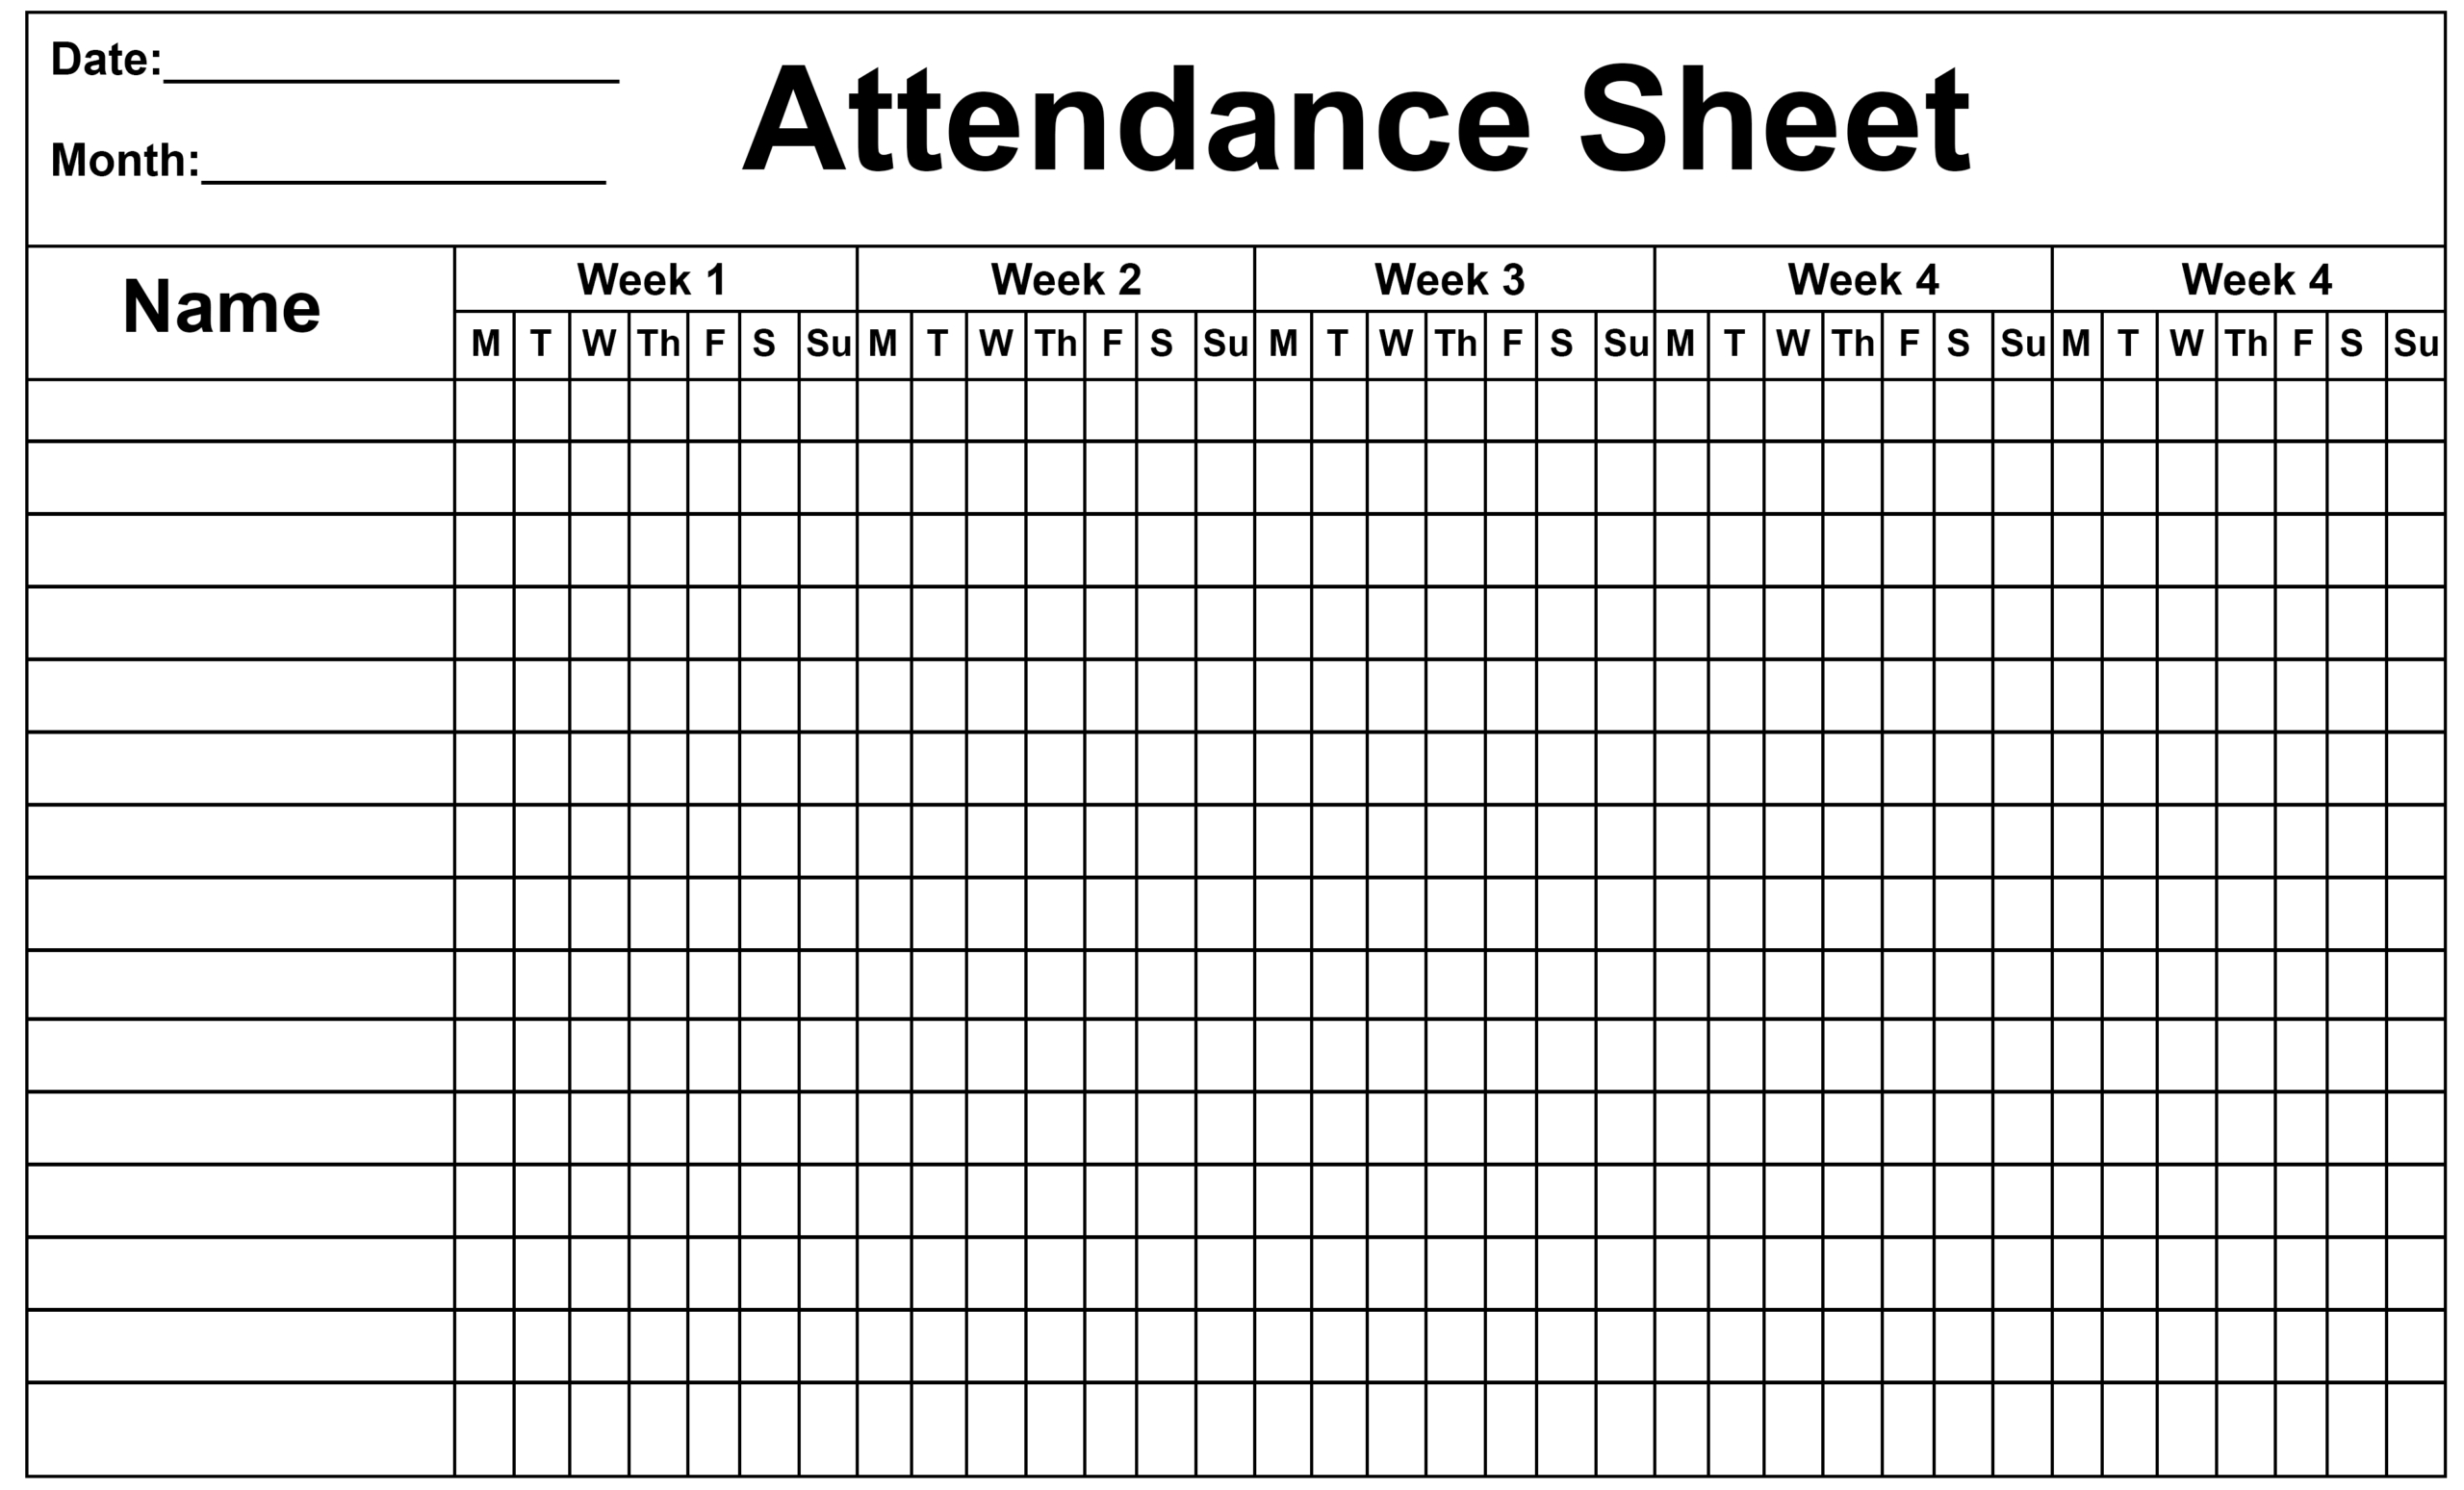 Employee Attendance Sheet Template Calendar | Calendar-2021 Employee Attendance Calendar Template